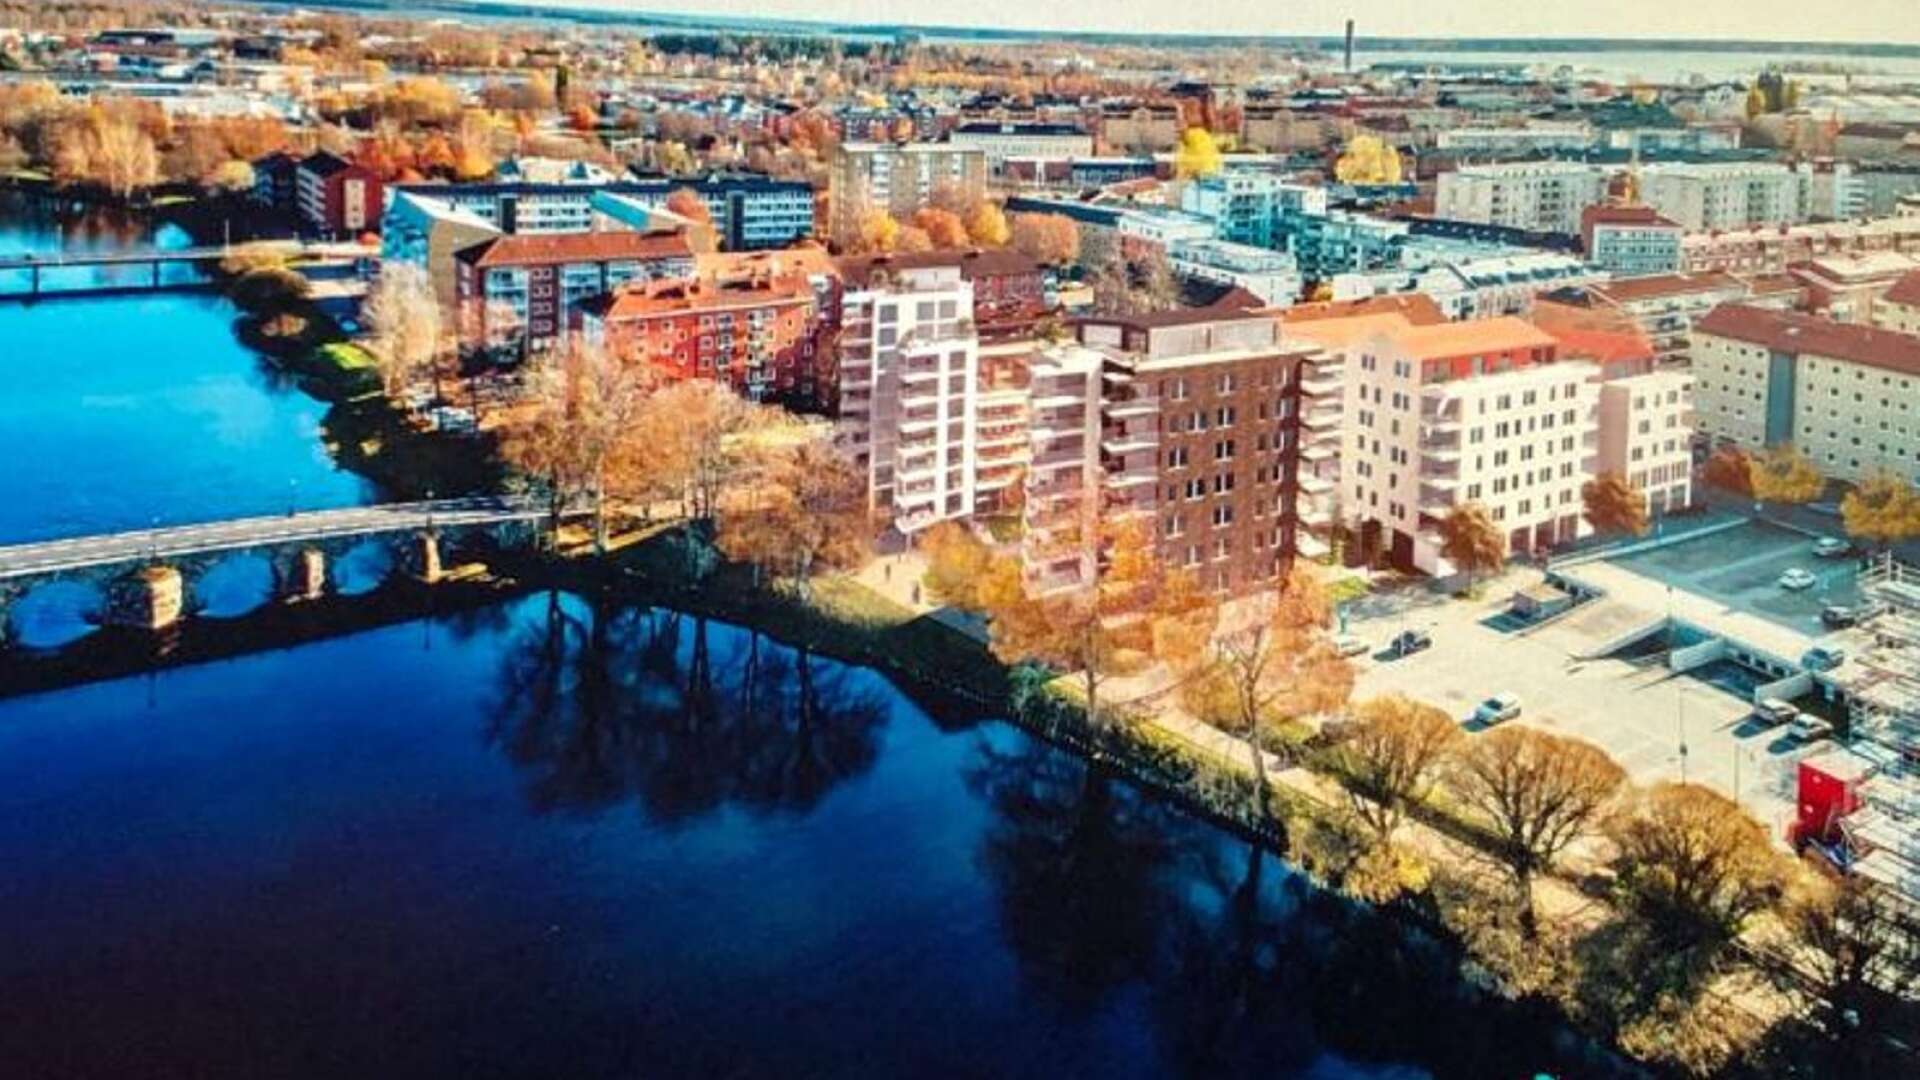 Karlstadhus ska uppföra fyra nya flerbostadshus intill Klarälven i Haga samt bygga på ett befintligt hus med två våningar. Totalt kommer projektet som nu har fått bygglov bestå av 134 nya lägenheter.